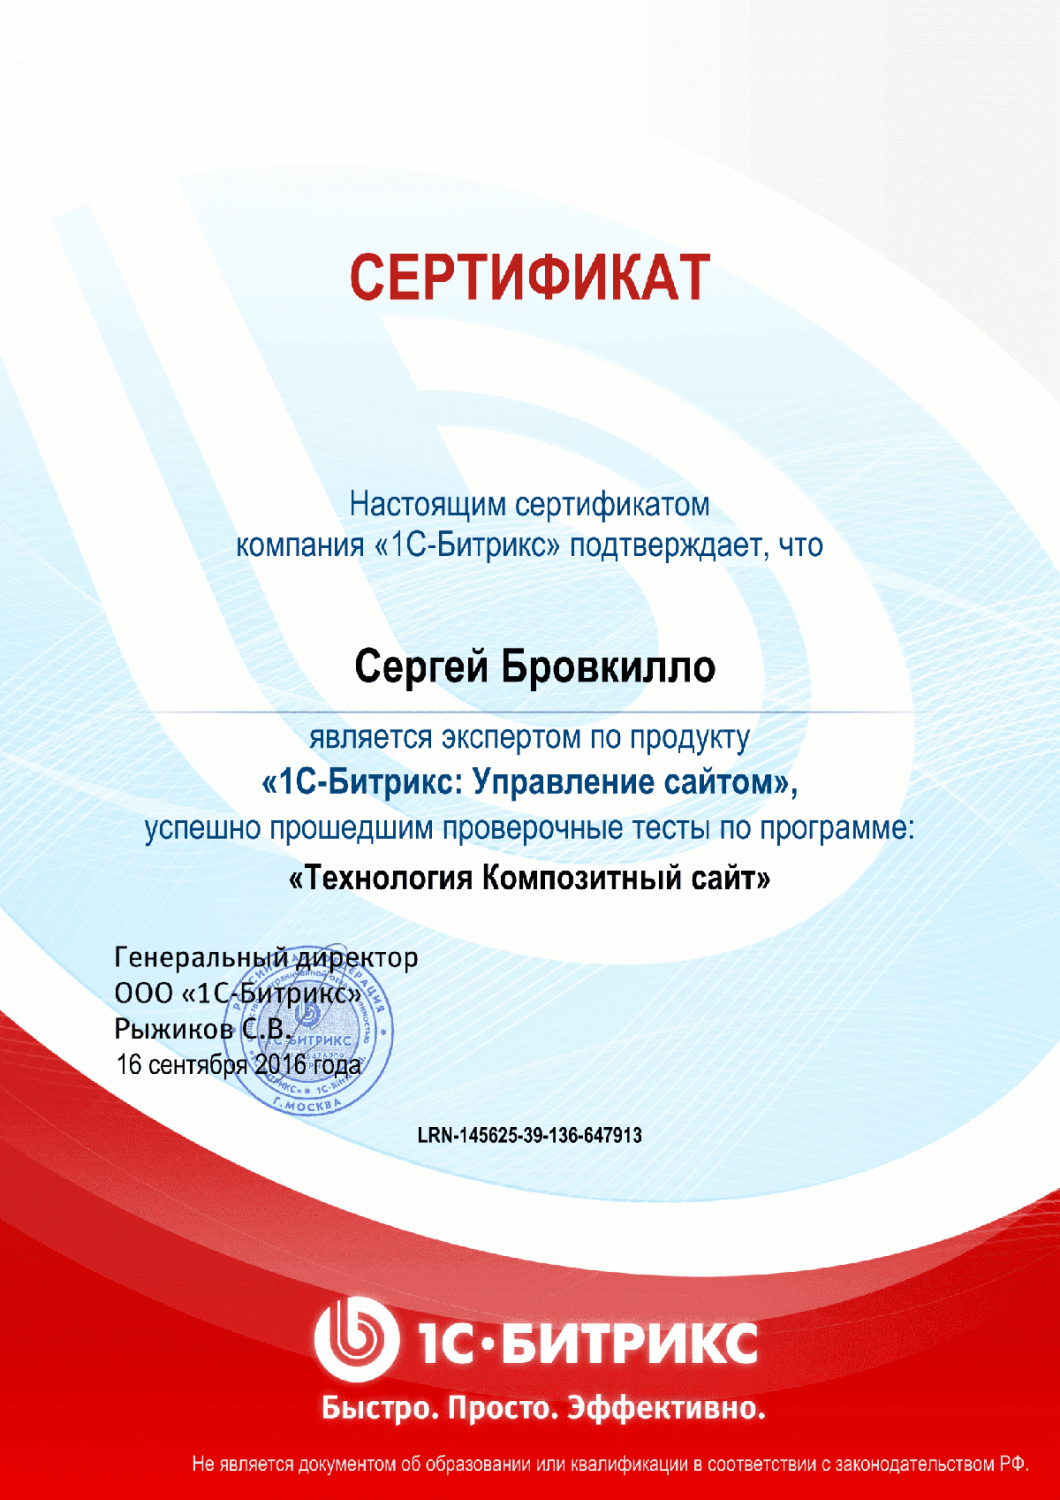 Сертификат "Технология Композитный сайт" в Москвы